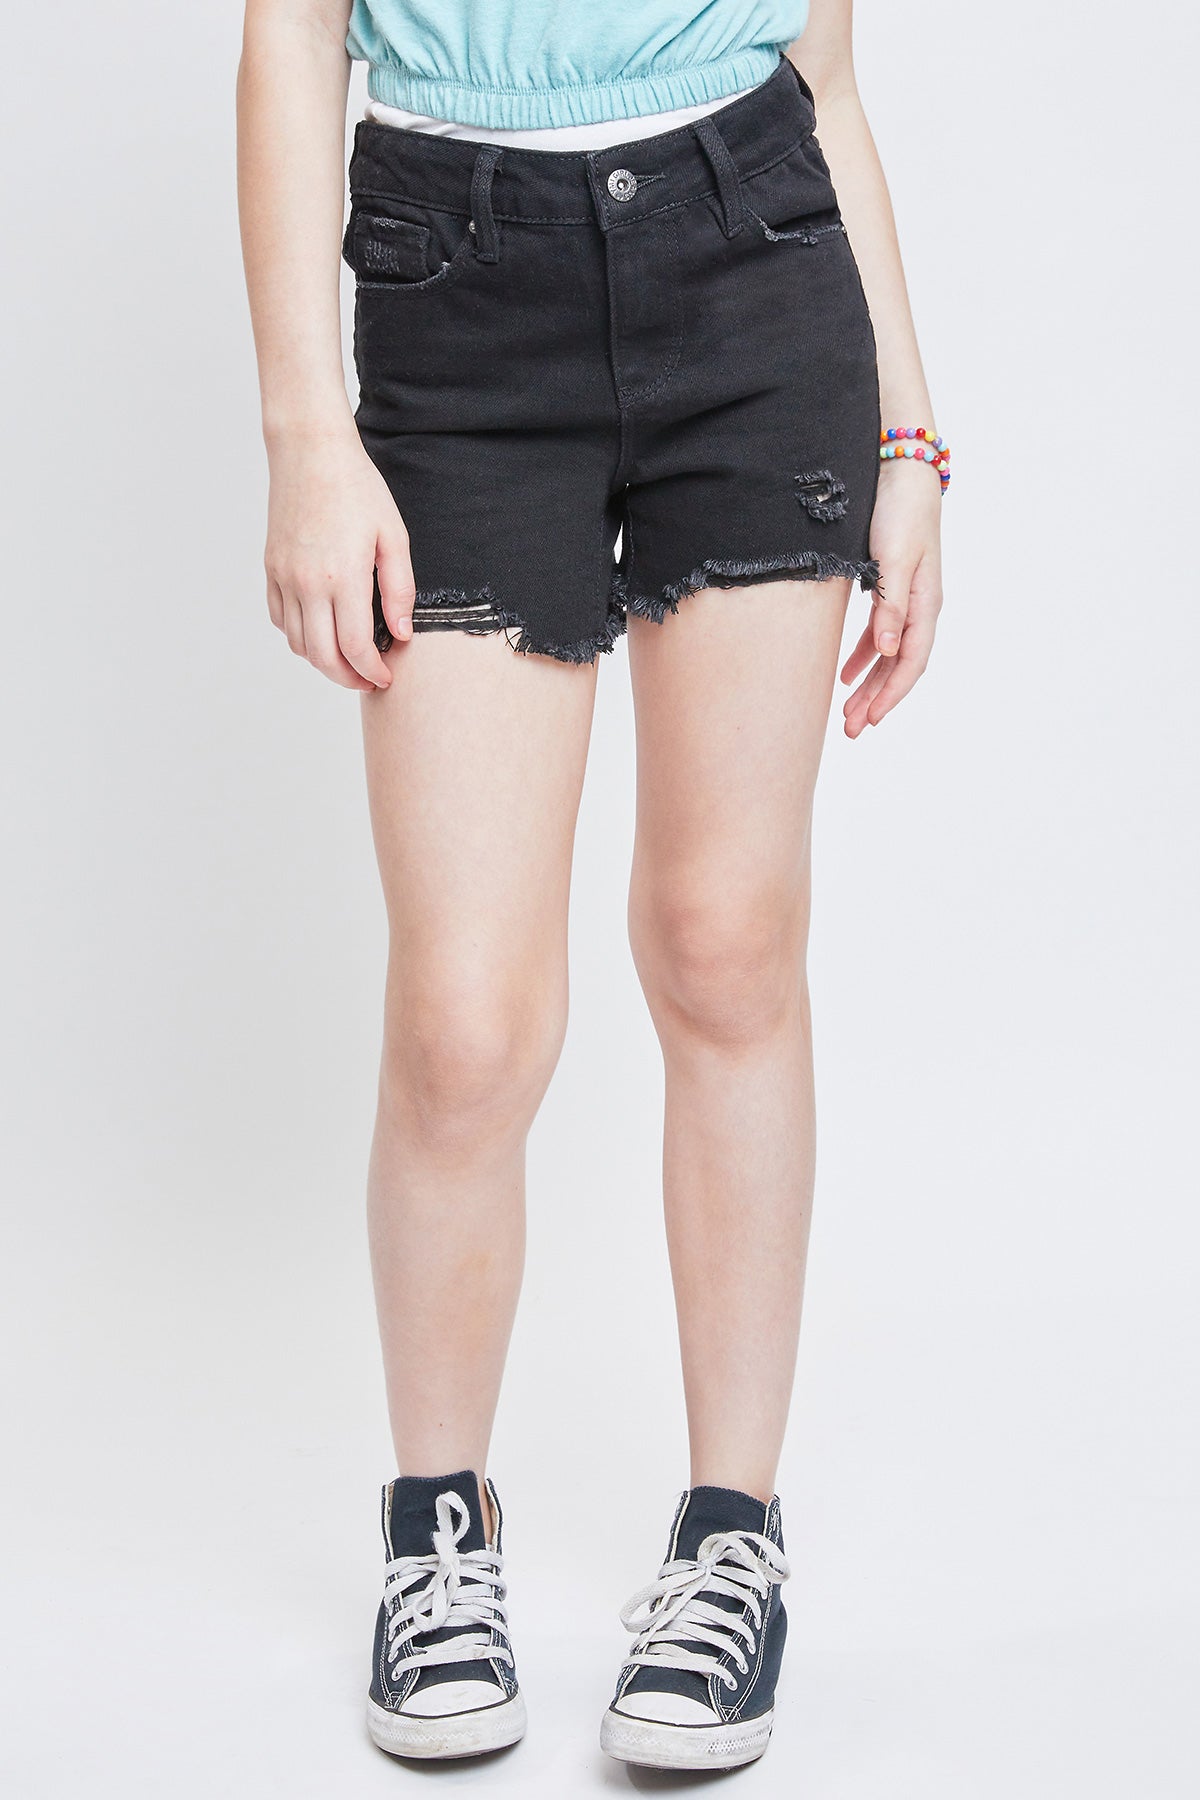 Girls 1 Button Hybrid Denim Fray Hem Shorts 12 Pack